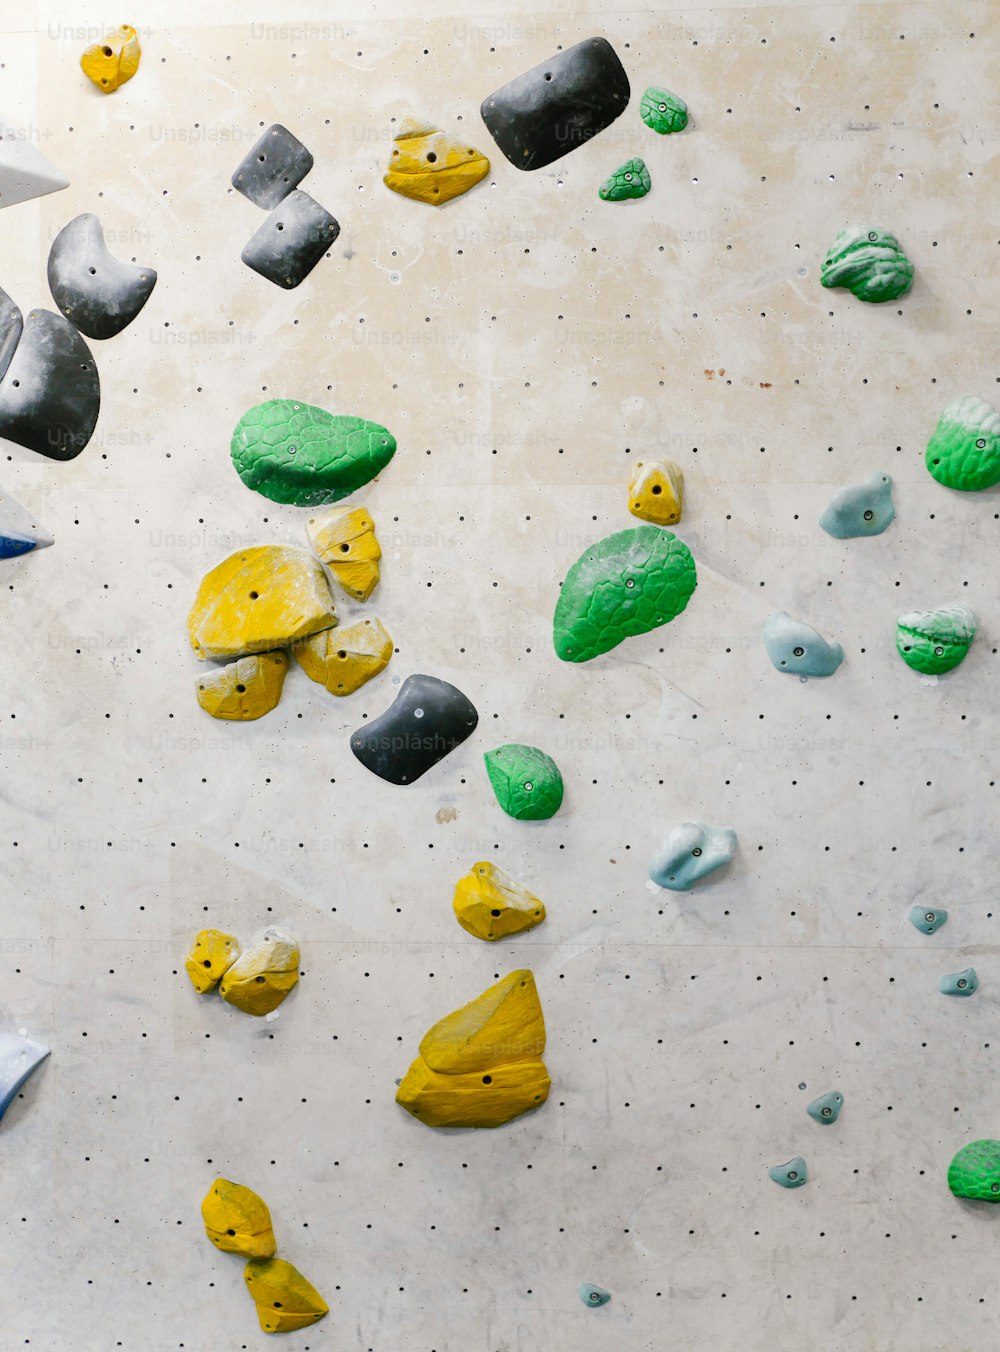 un mur d’escalade rempli de beaucoup de roches vertes et jaunes